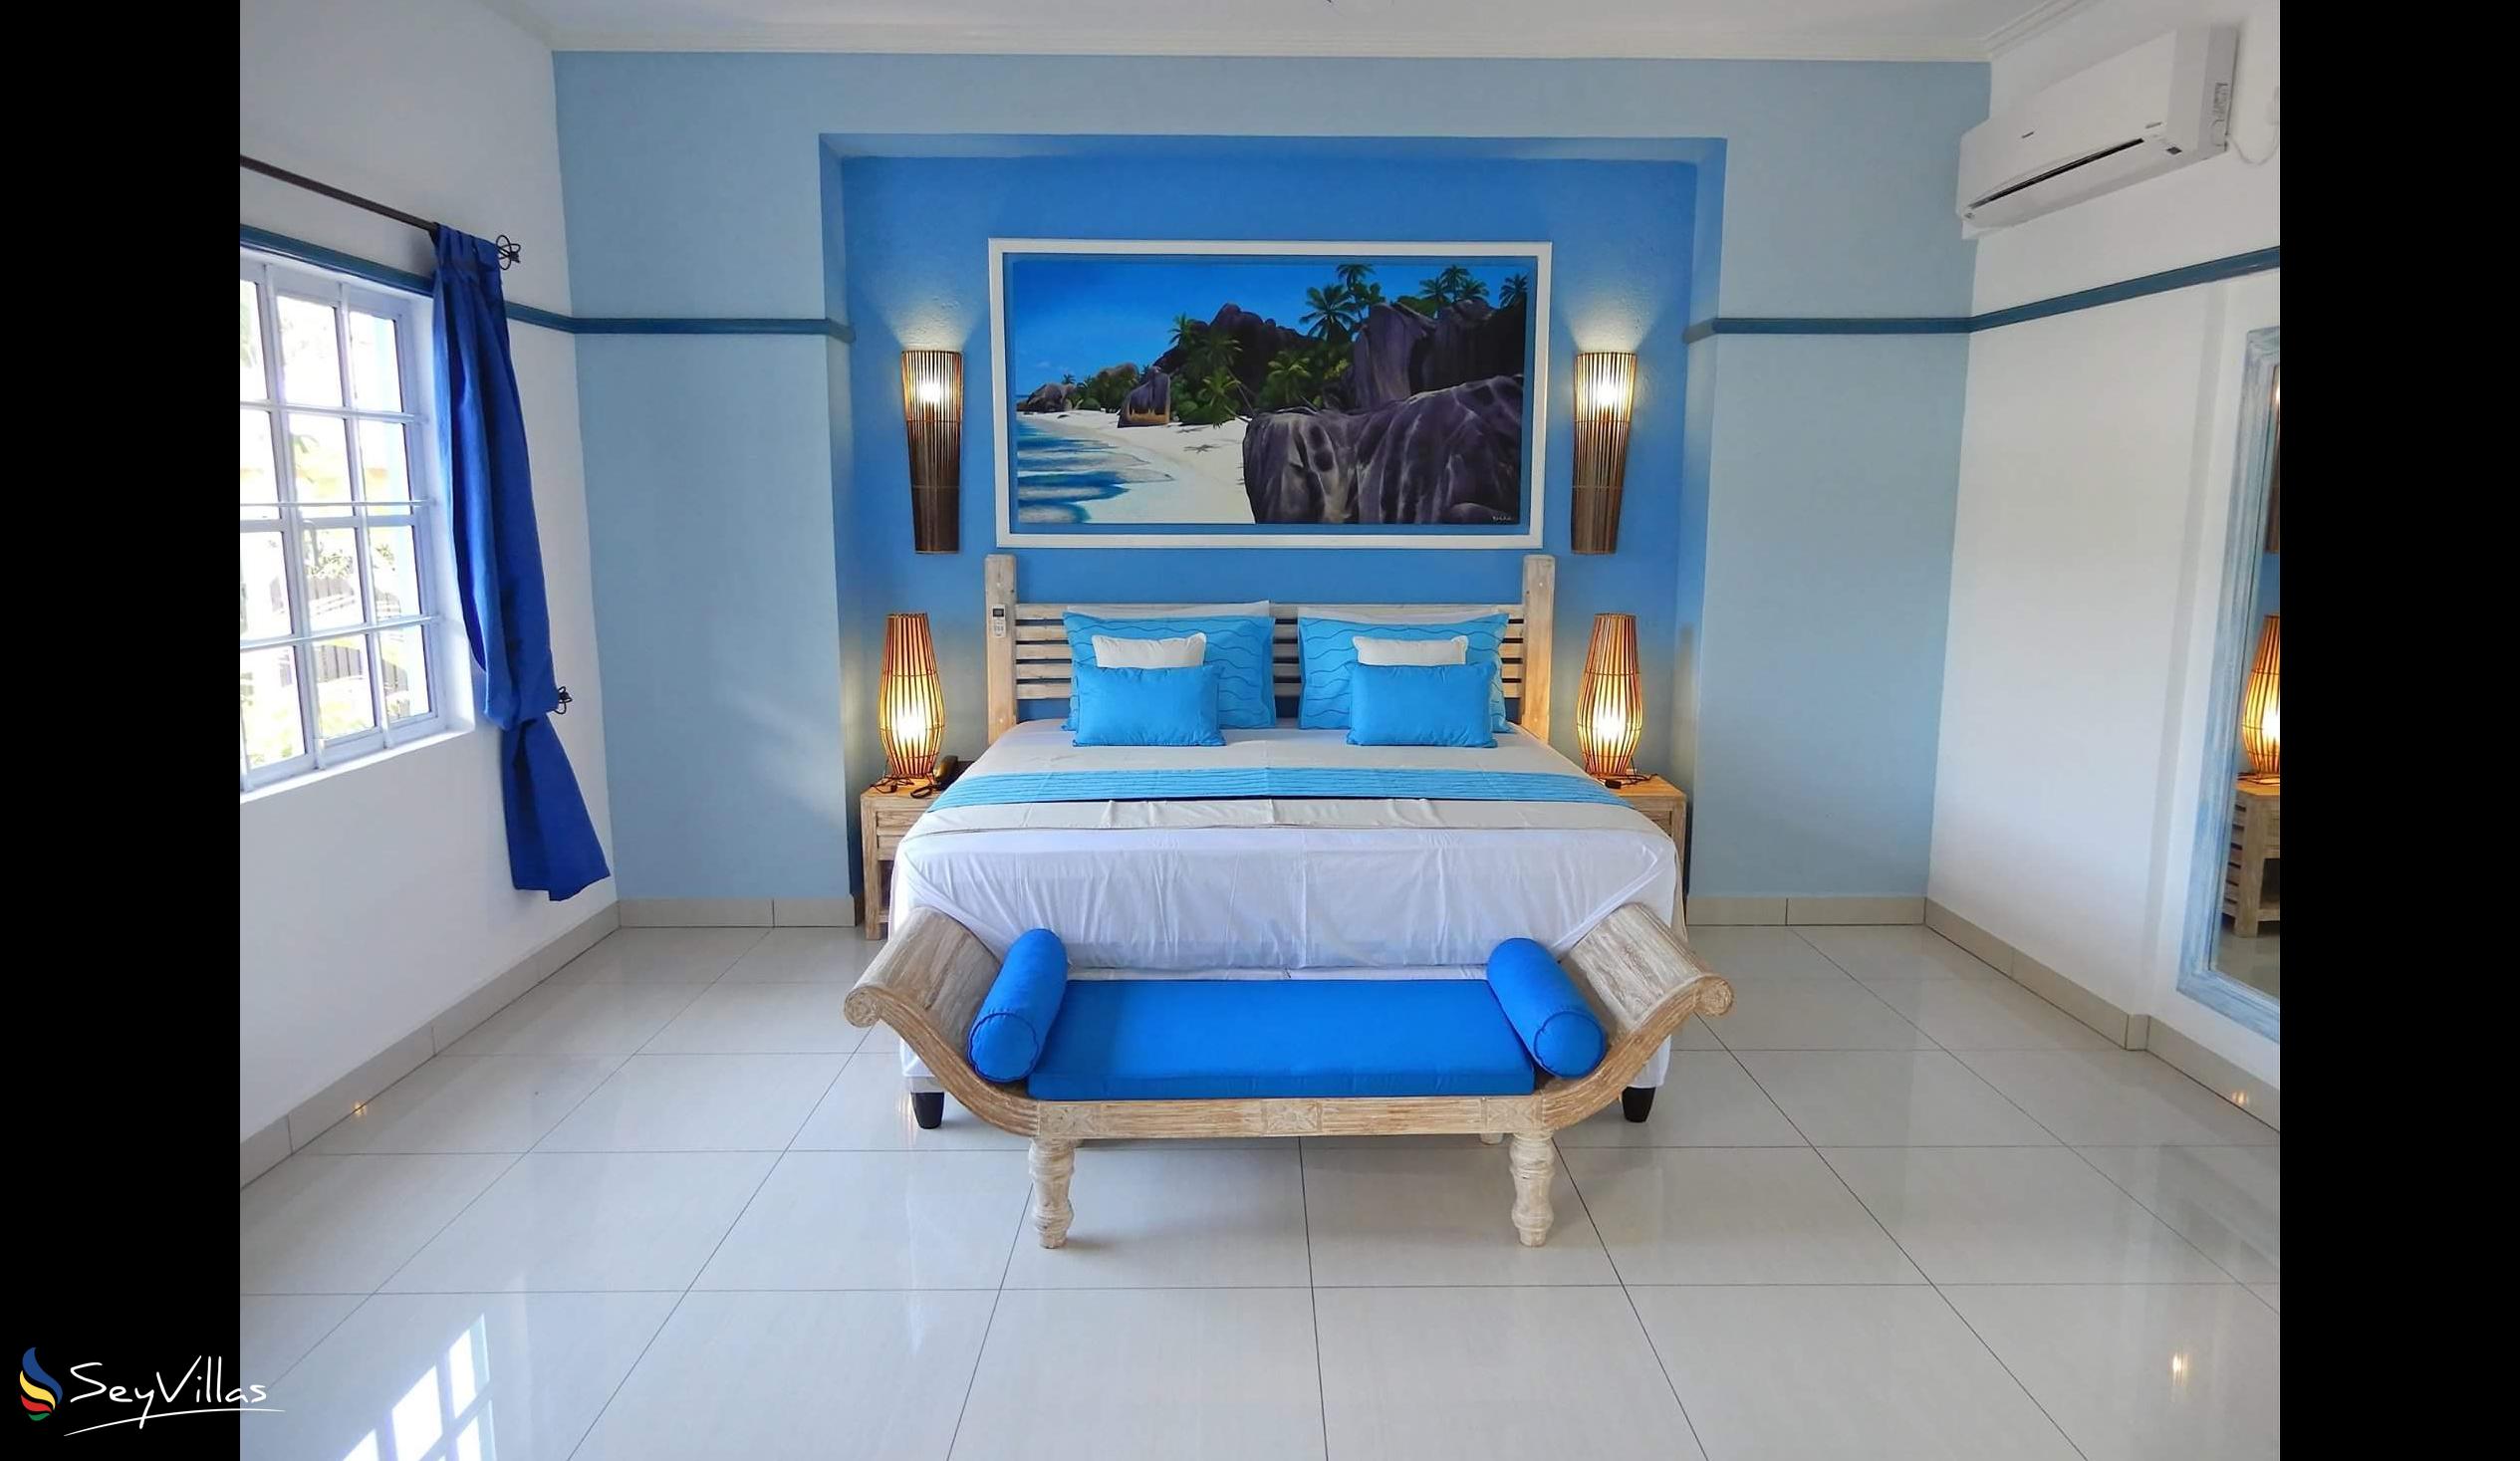 Foto 58: Villa Charme De L'ile - Appartamento Deluxe con vista piscina - La Digue (Seychelles)